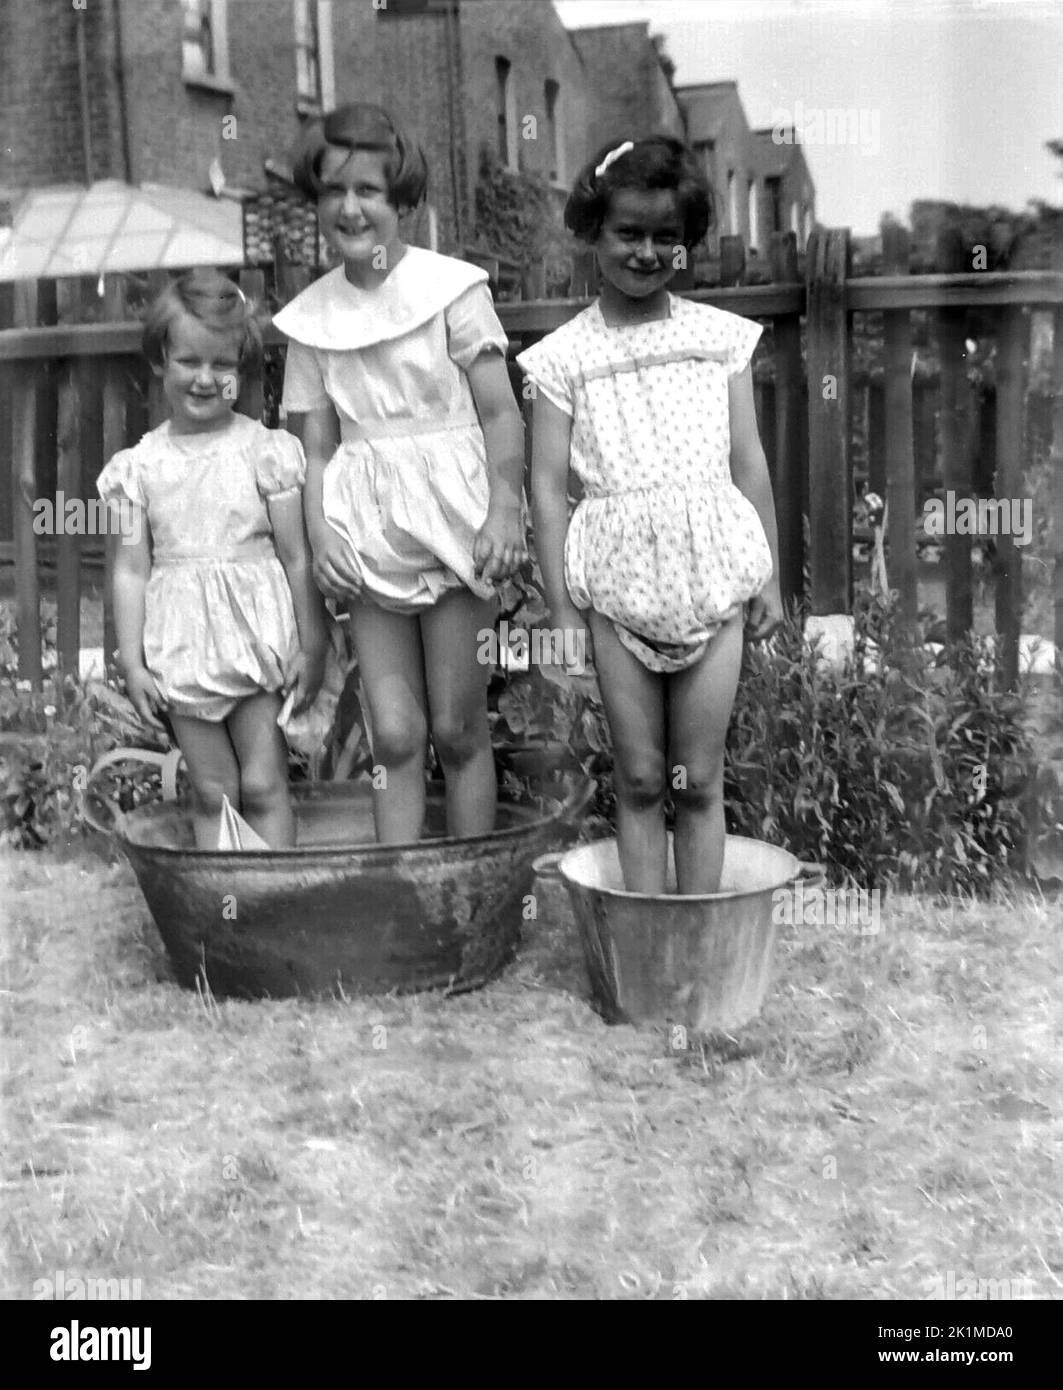 Années 1940, historique, trois jeunes filles jouant à l'extérieur, debout dans deux seaux en métal dans un jardin arrière d'une maison mitoyenne, Angleterre, Royaume-Uni. L'un des seaux est une cuve de lavage en étain galvanisé traditonal commun pour la lessive et le lavage des vêtements à cette époque. Banque D'Images